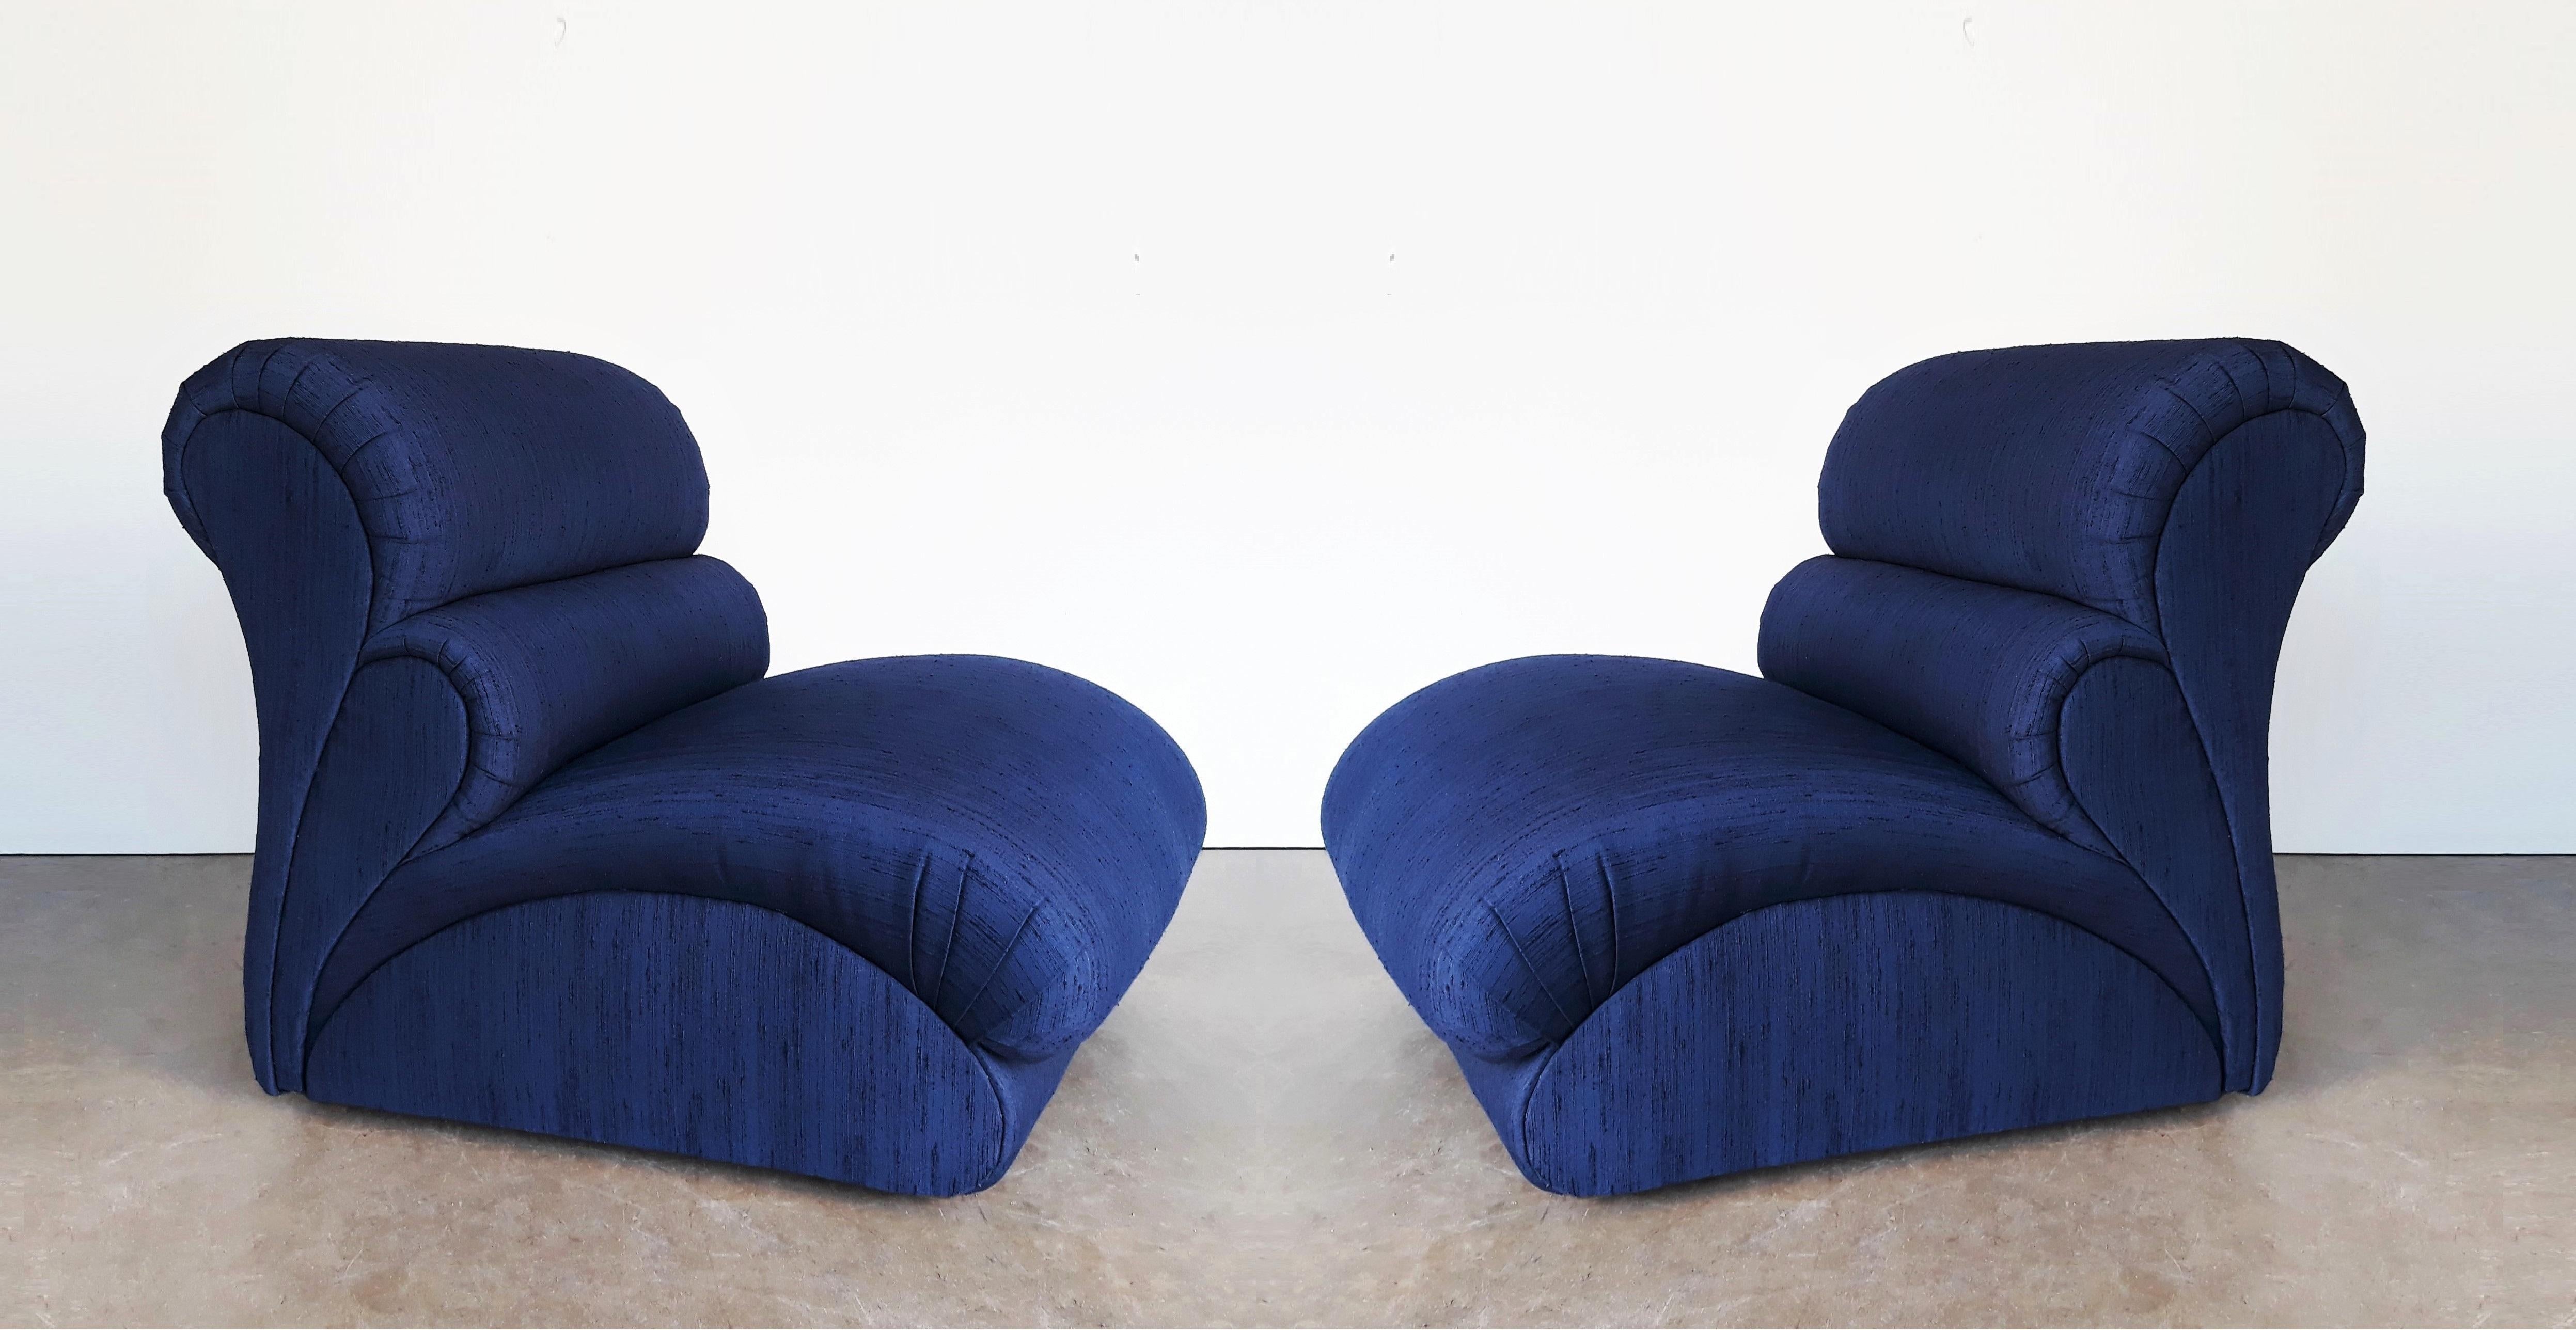 Ces superbes chaises de salon/slipper Avant Garde de Weiman Furniture ne font pas exception. De leur silhouette visuellement frappante à leurs montures surdimensionnées, le confort du style est une priorité absolue ; elles sont minimalistes. Tapissé